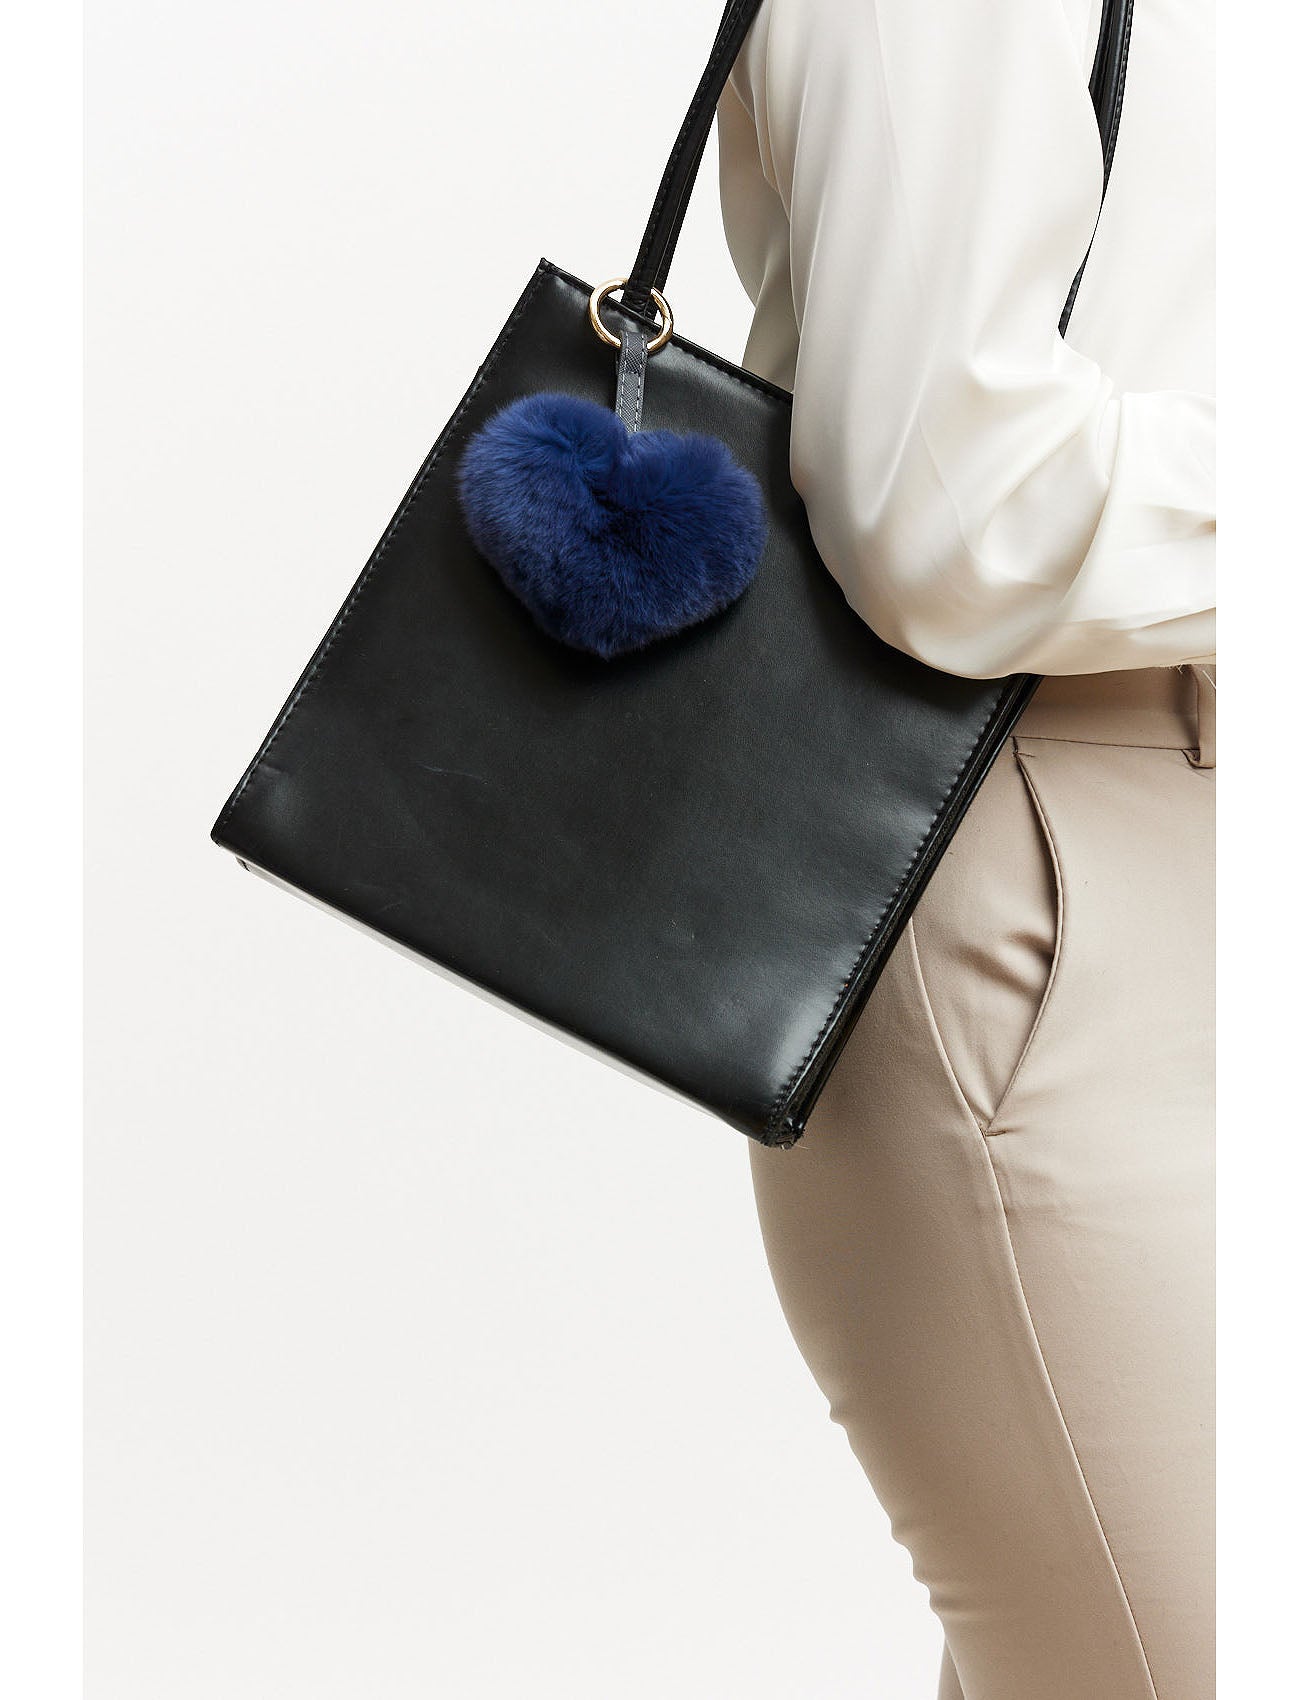 Handtaschenanhänger aus Fell in Herzform - blau